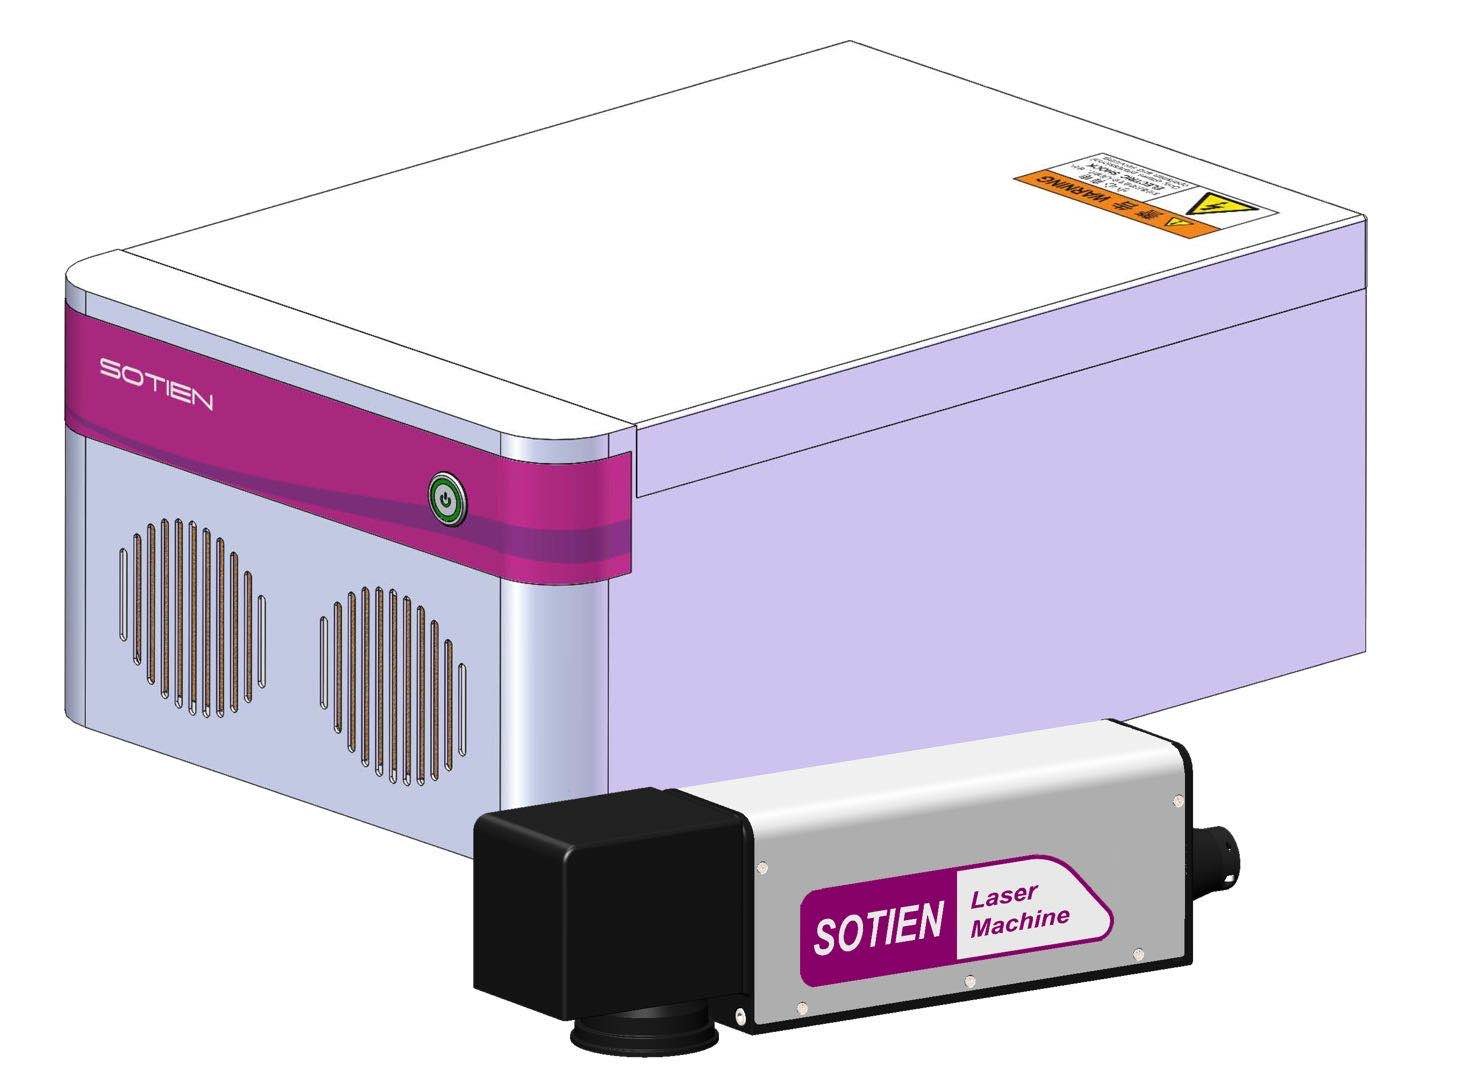 Dikai IP65 20w Fiber Laser Marking Machine Engraver Air Cooling